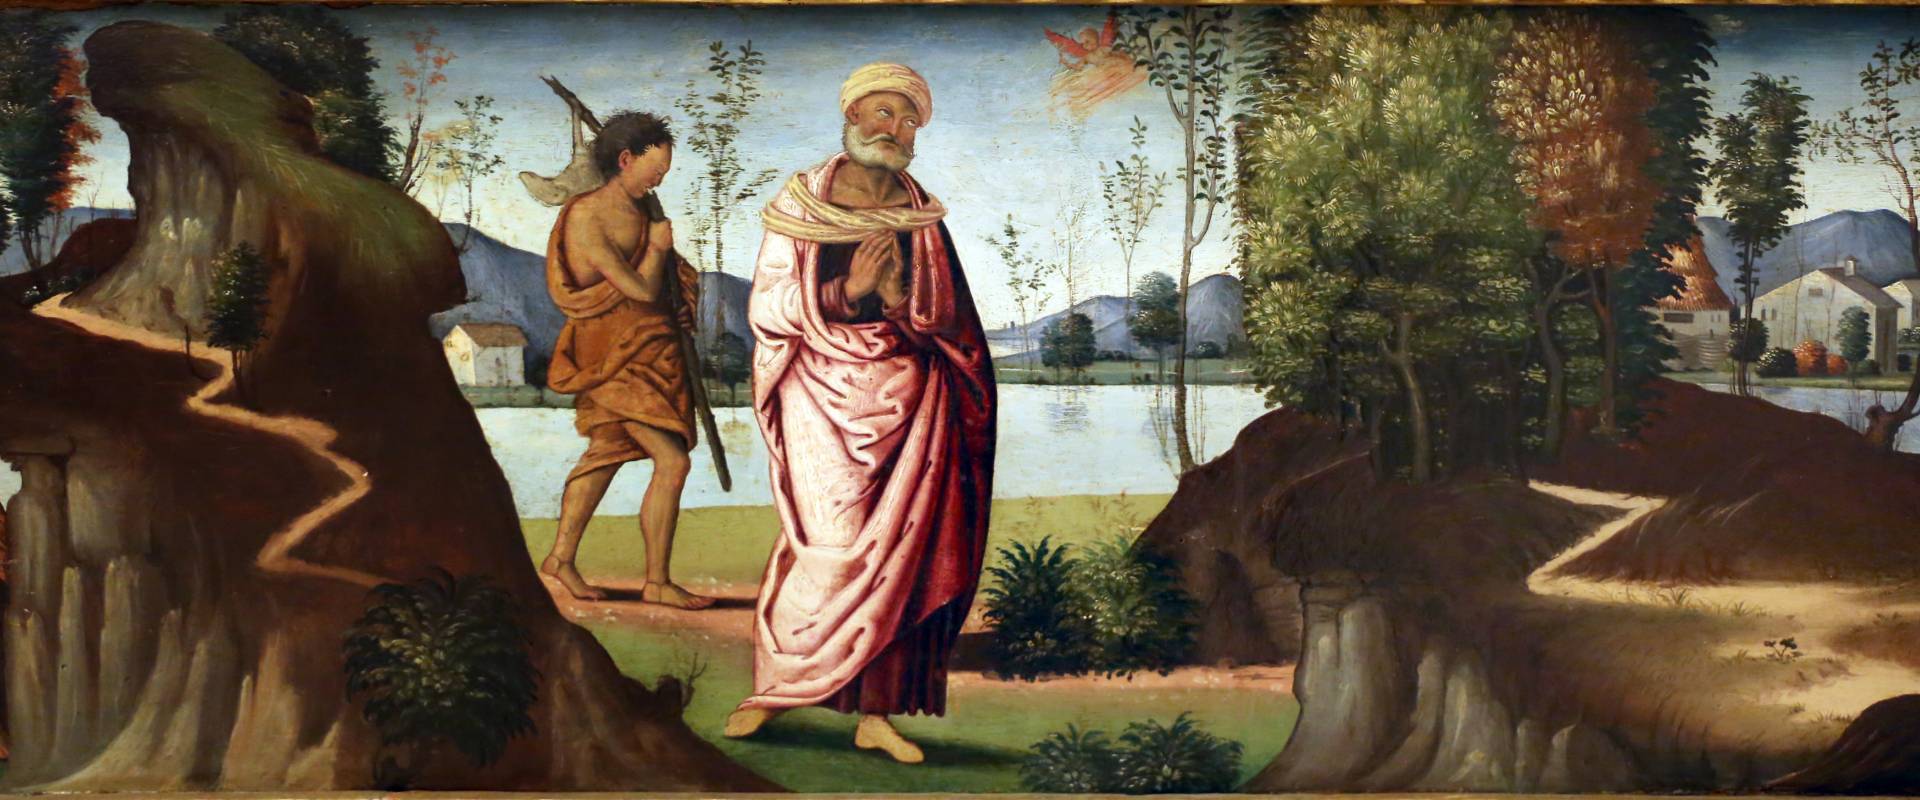 Marco meloni (attr.), storie di abramo, 1504, 03 photo by Sailko